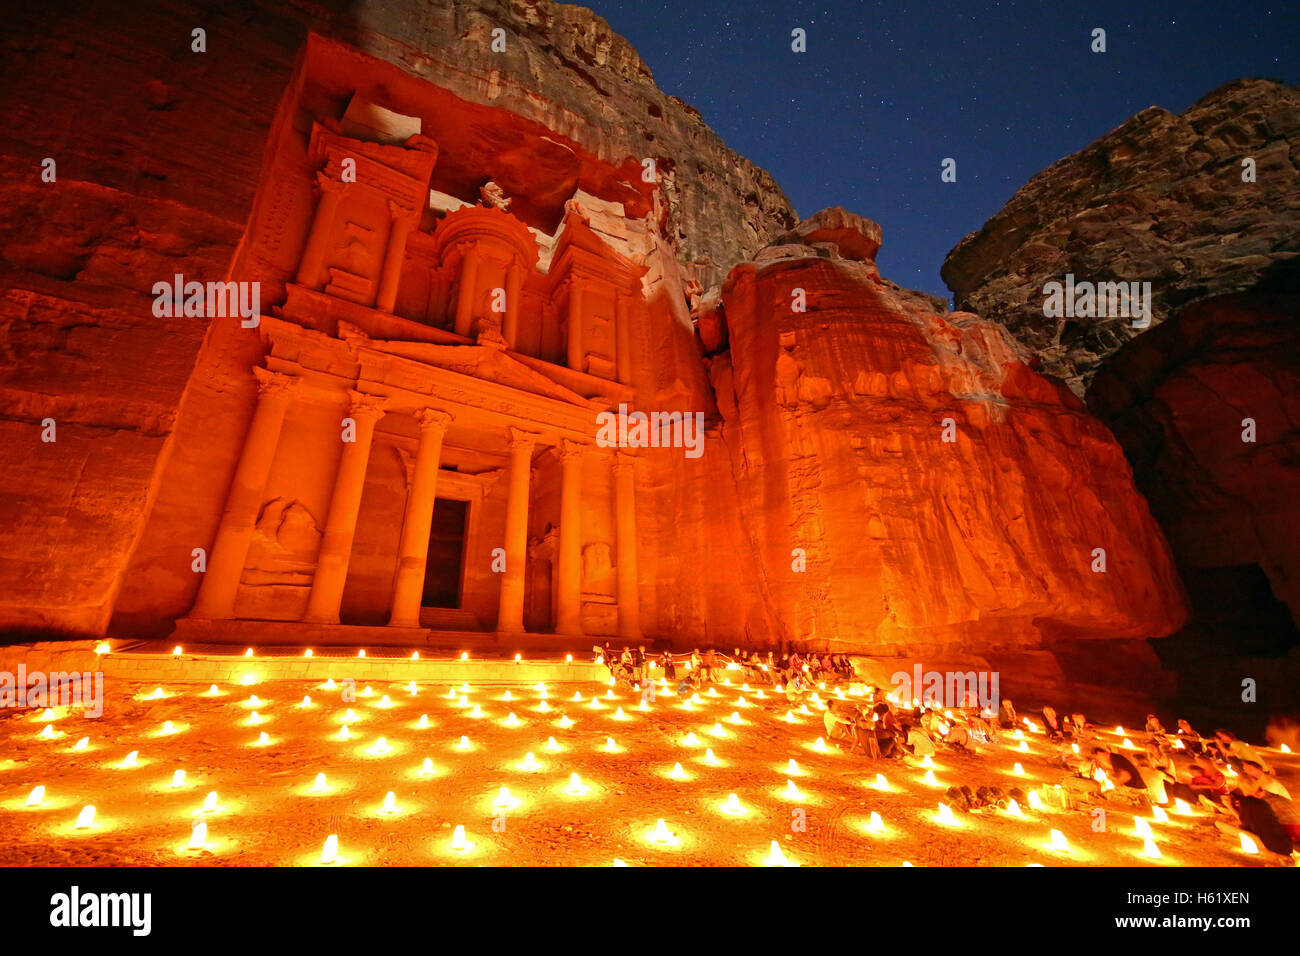 Vista de la Tesorería, Al-Khazneh, en la noche con velas, Petra, Jordania Foto de stock